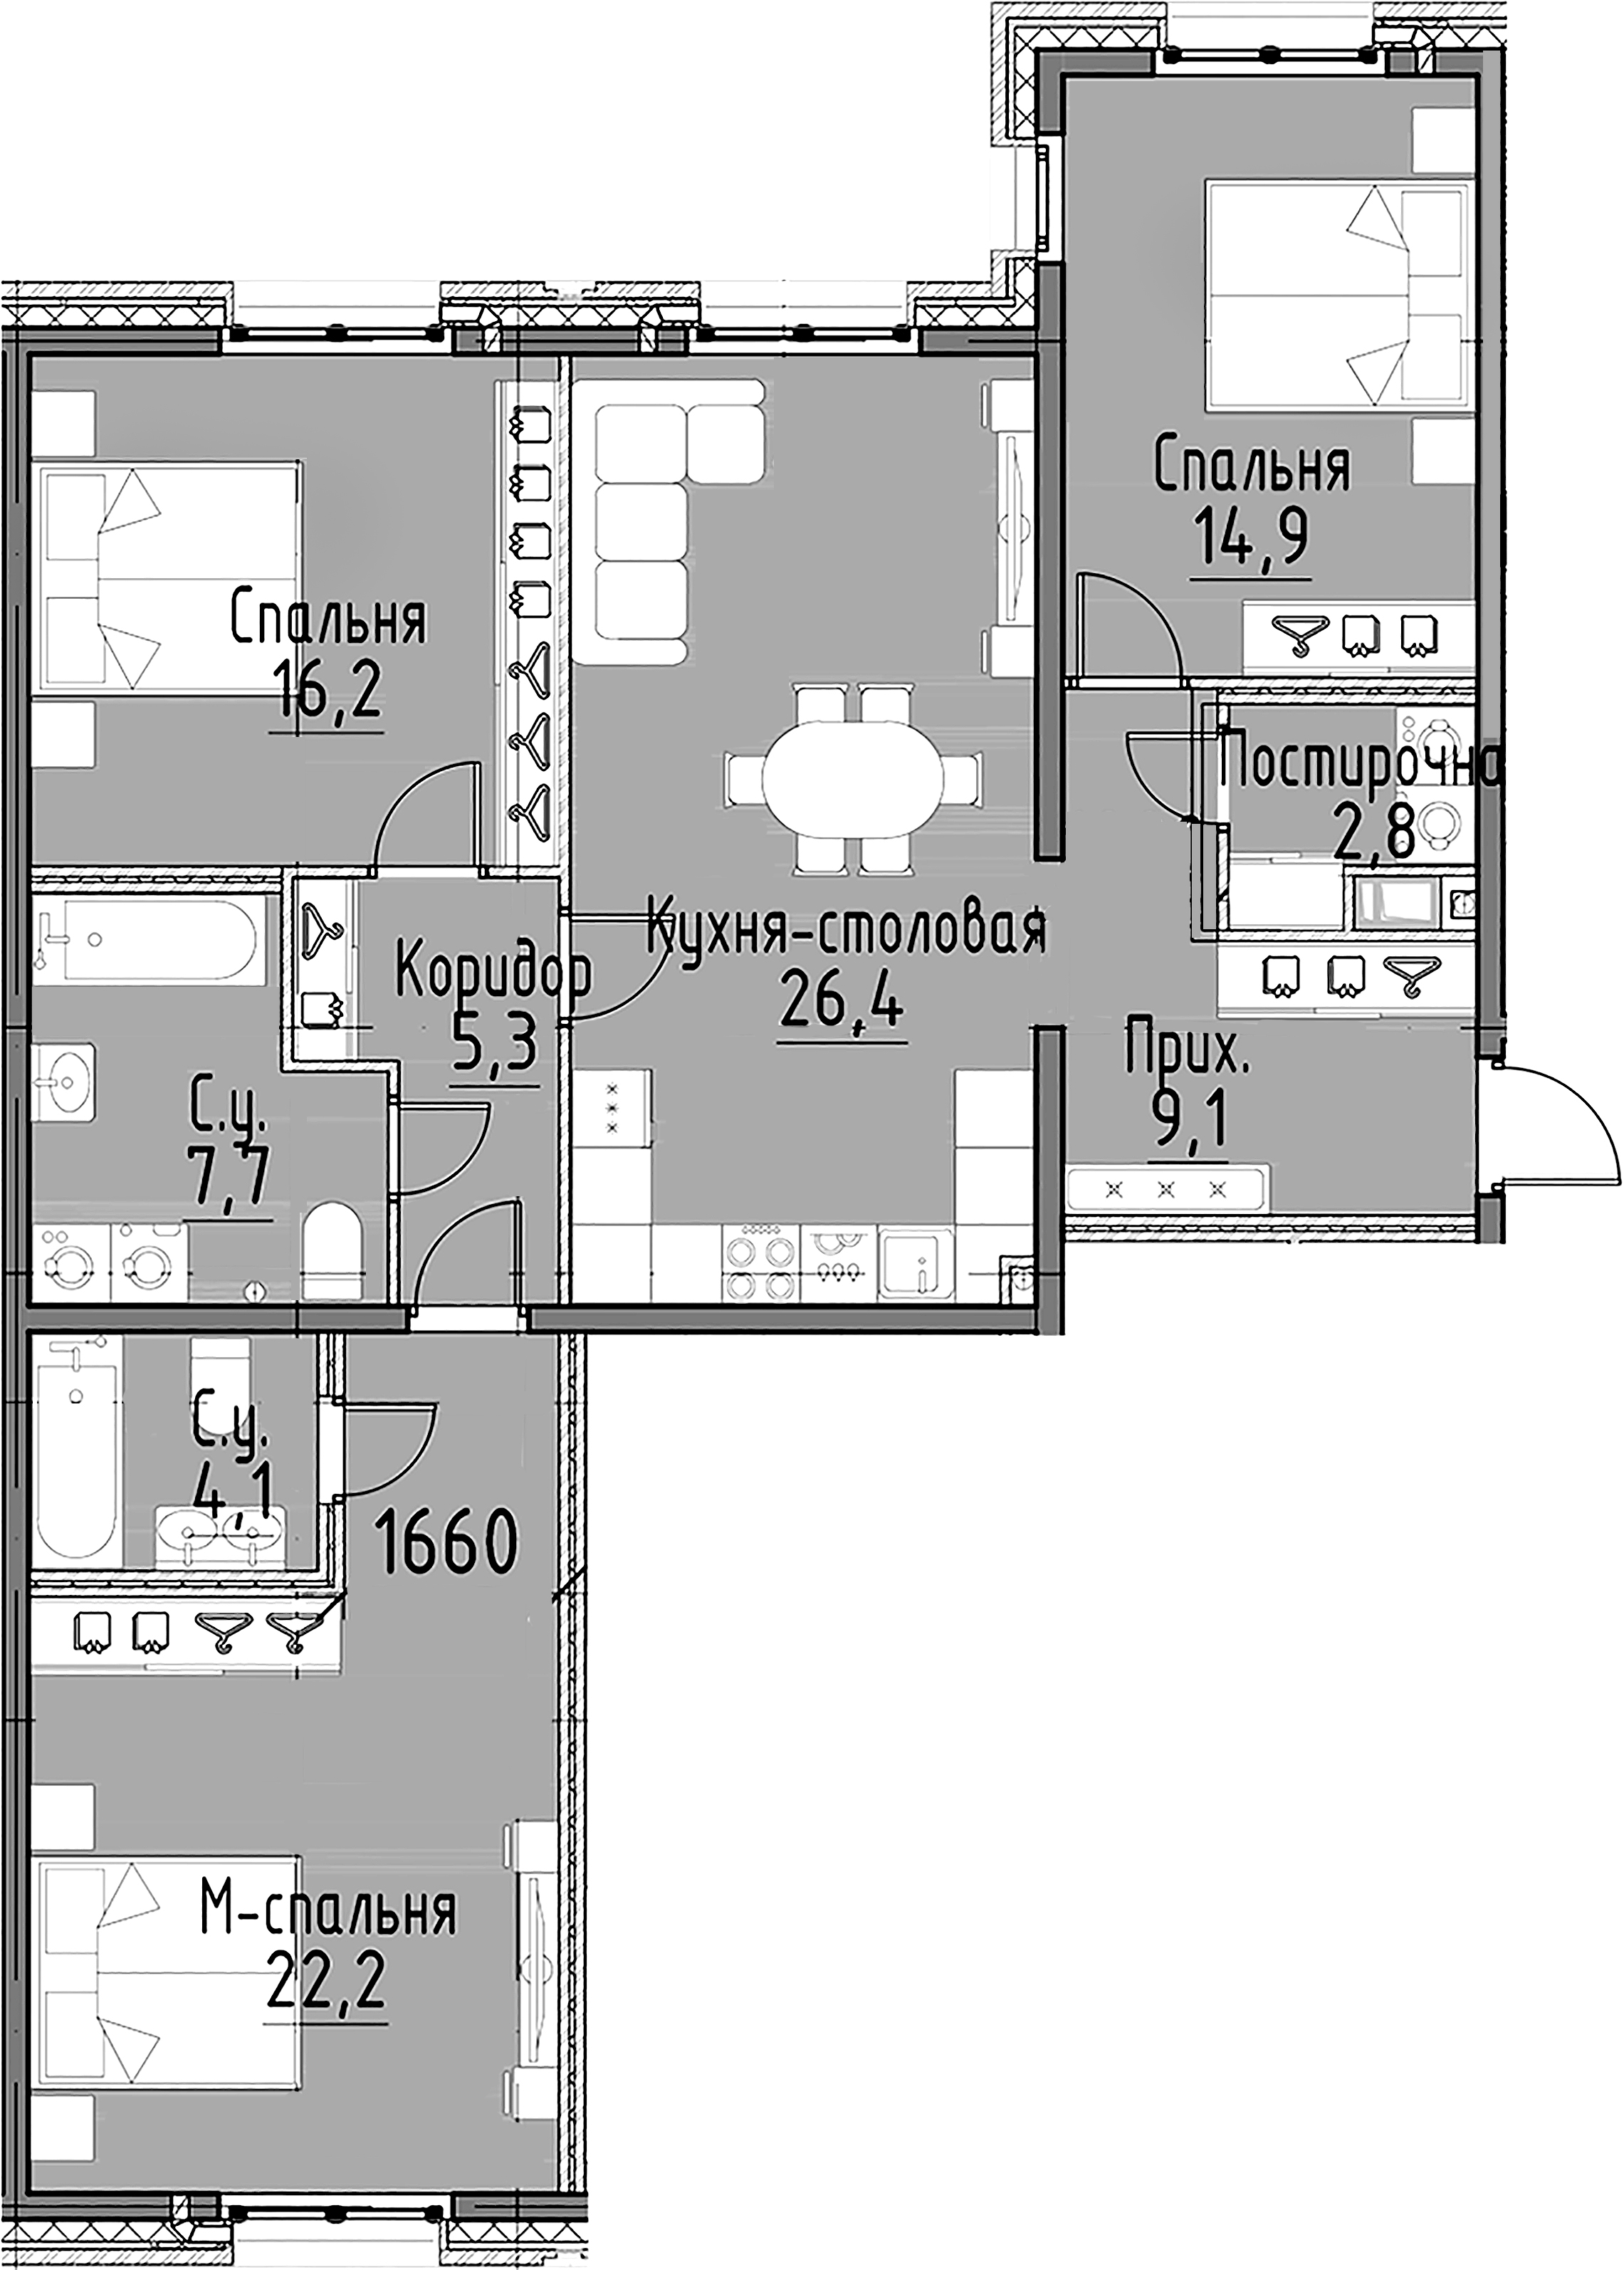 3-комнатная квартира  №7 в Моисеенко, 10: 108.7 м², этаж 3 - купить в Санкт-Петербурге